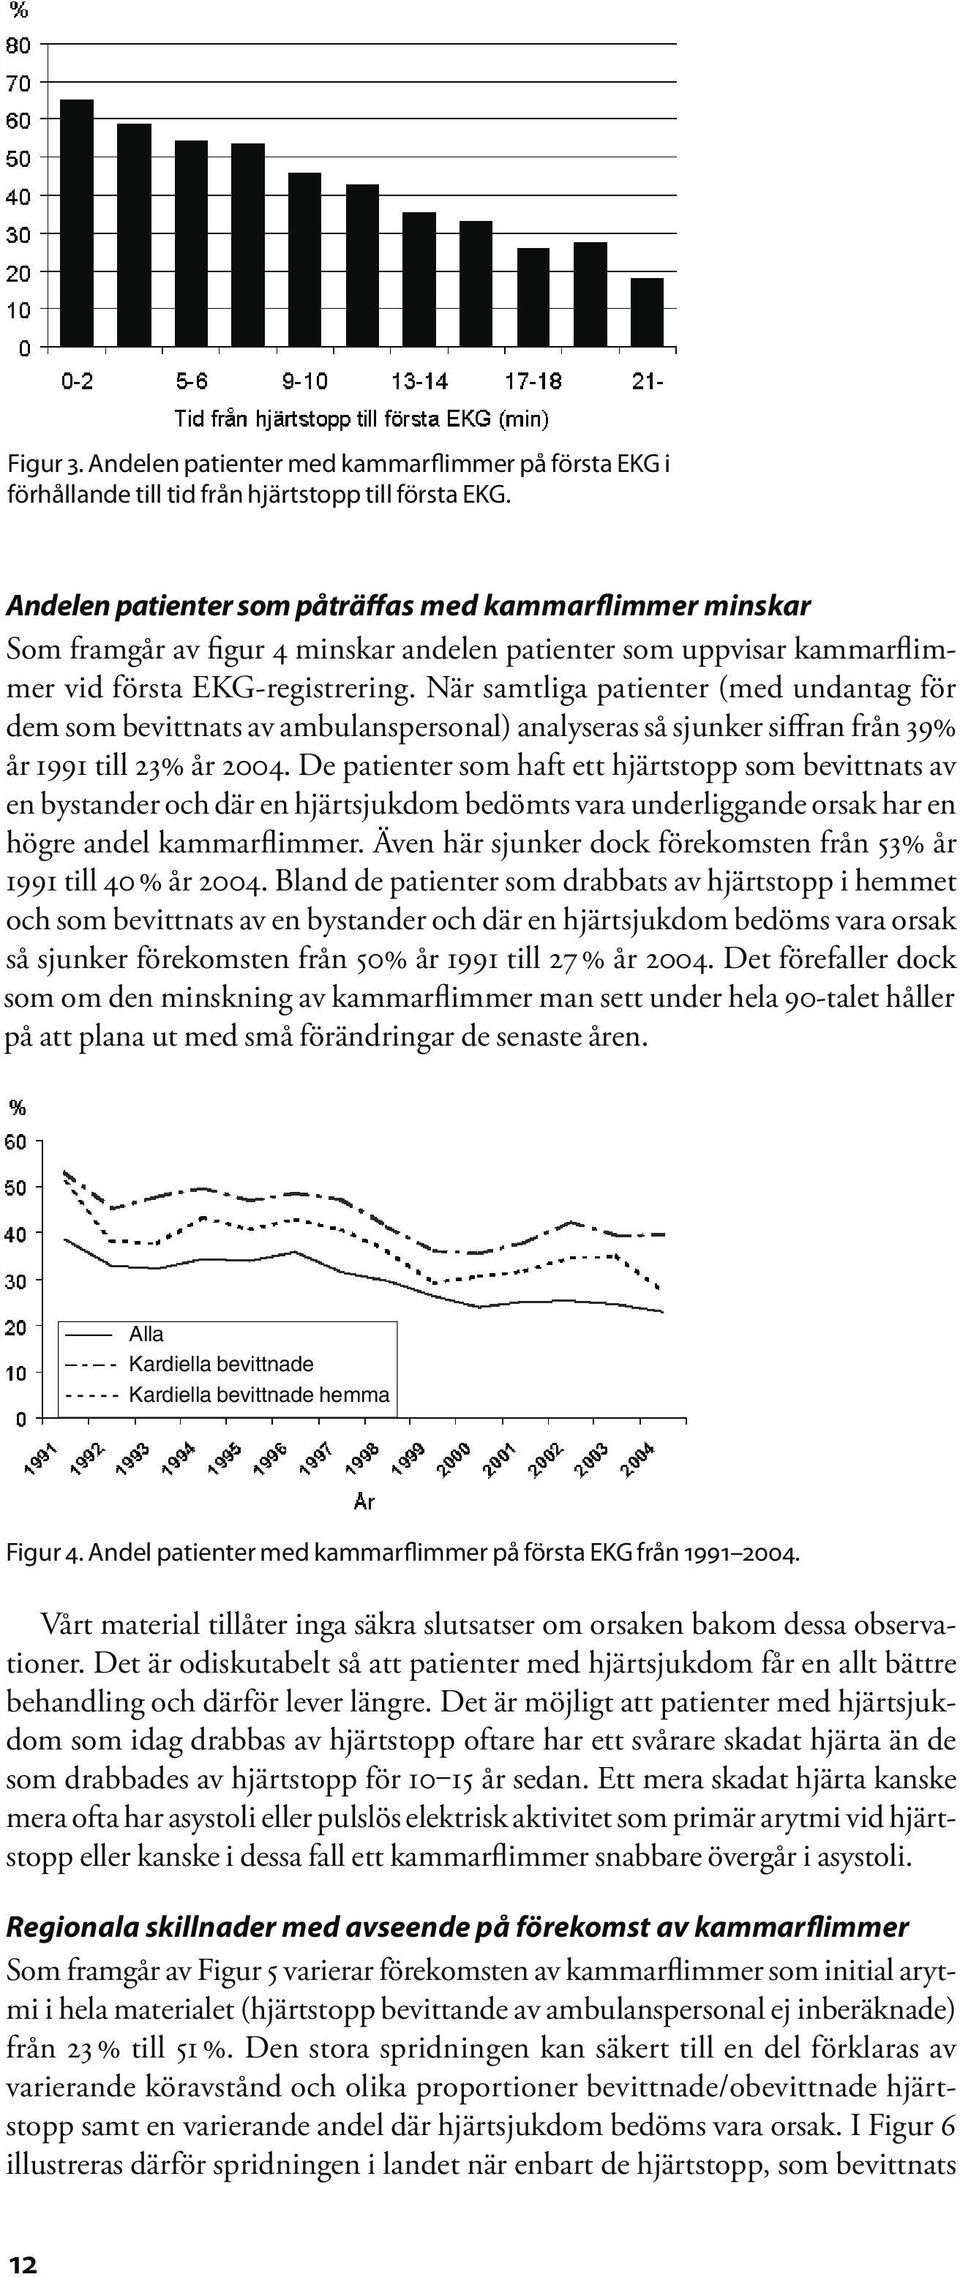 När samtliga patienter (med undantag för dem som bevittnats av ambulanspersonal) analyseras så sjunker siffran från 39% år 1991 till 23% år 2004.